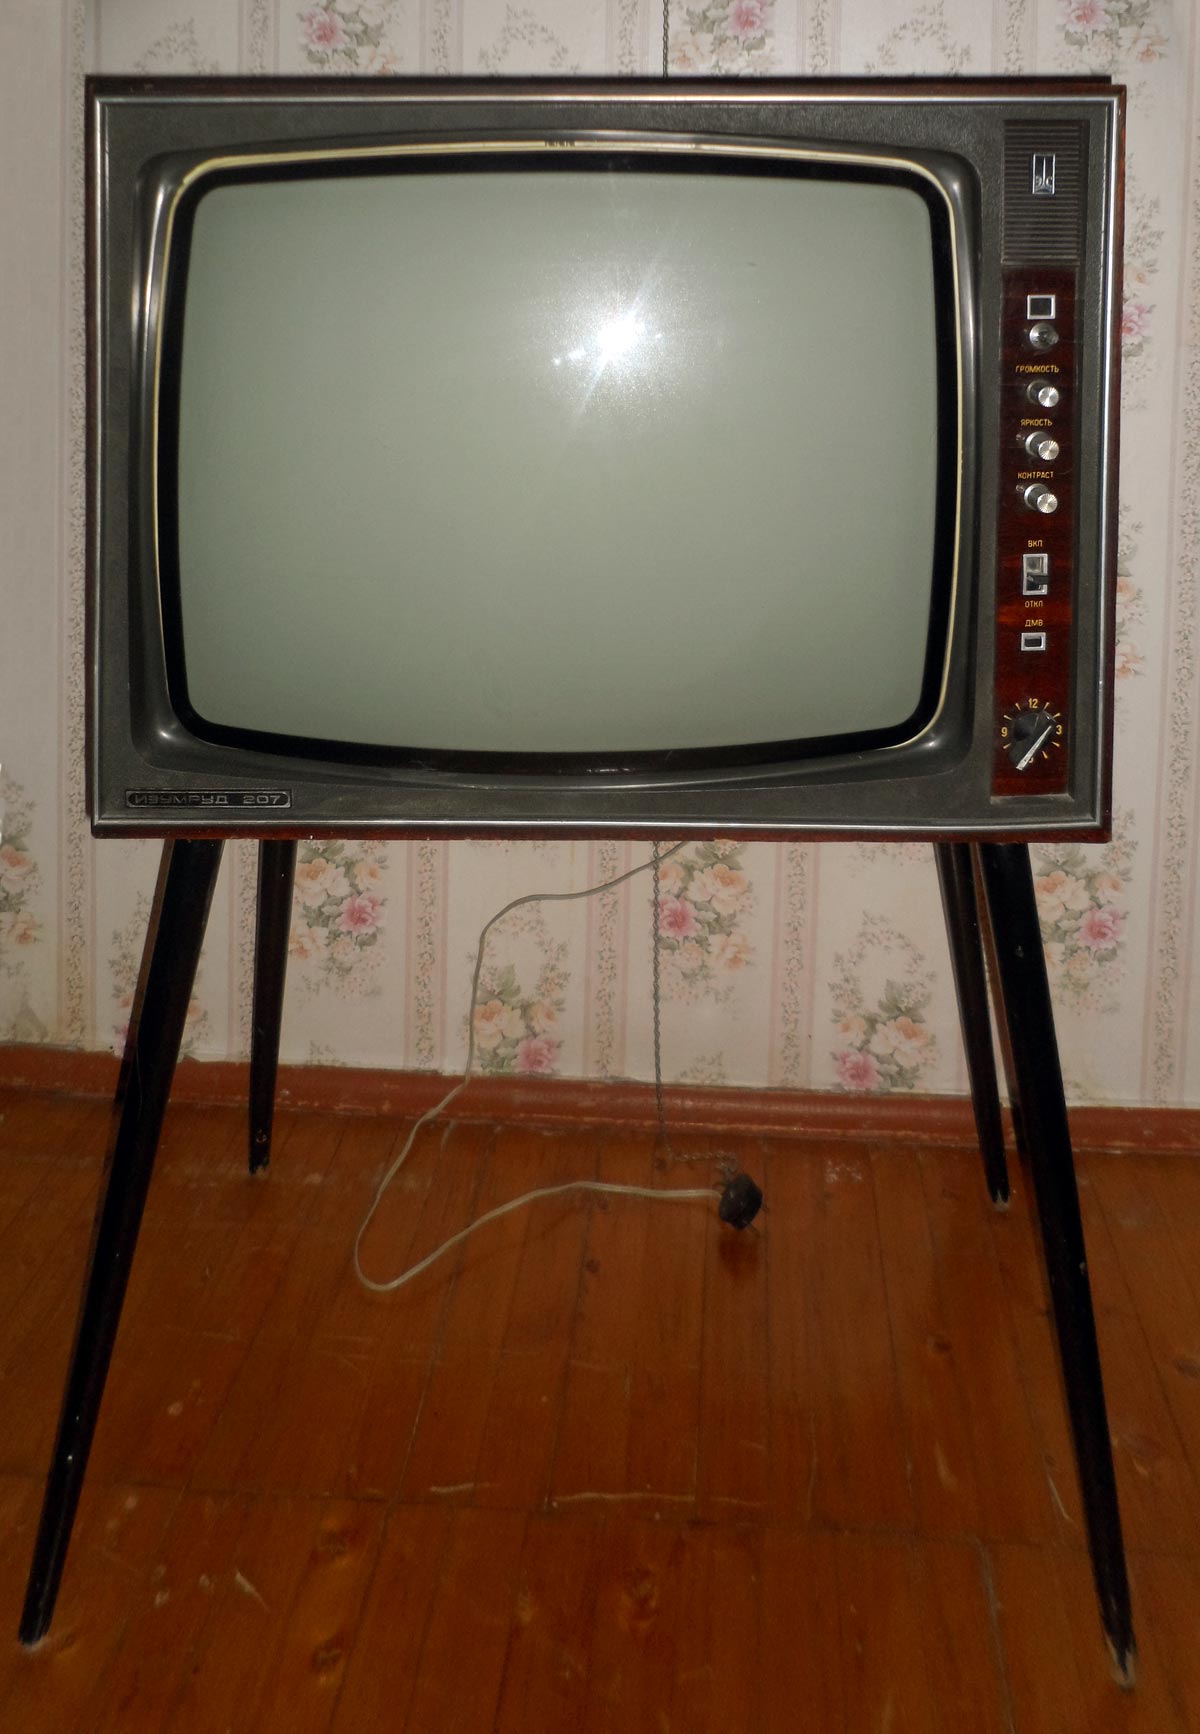 Телевизор Рубин 207